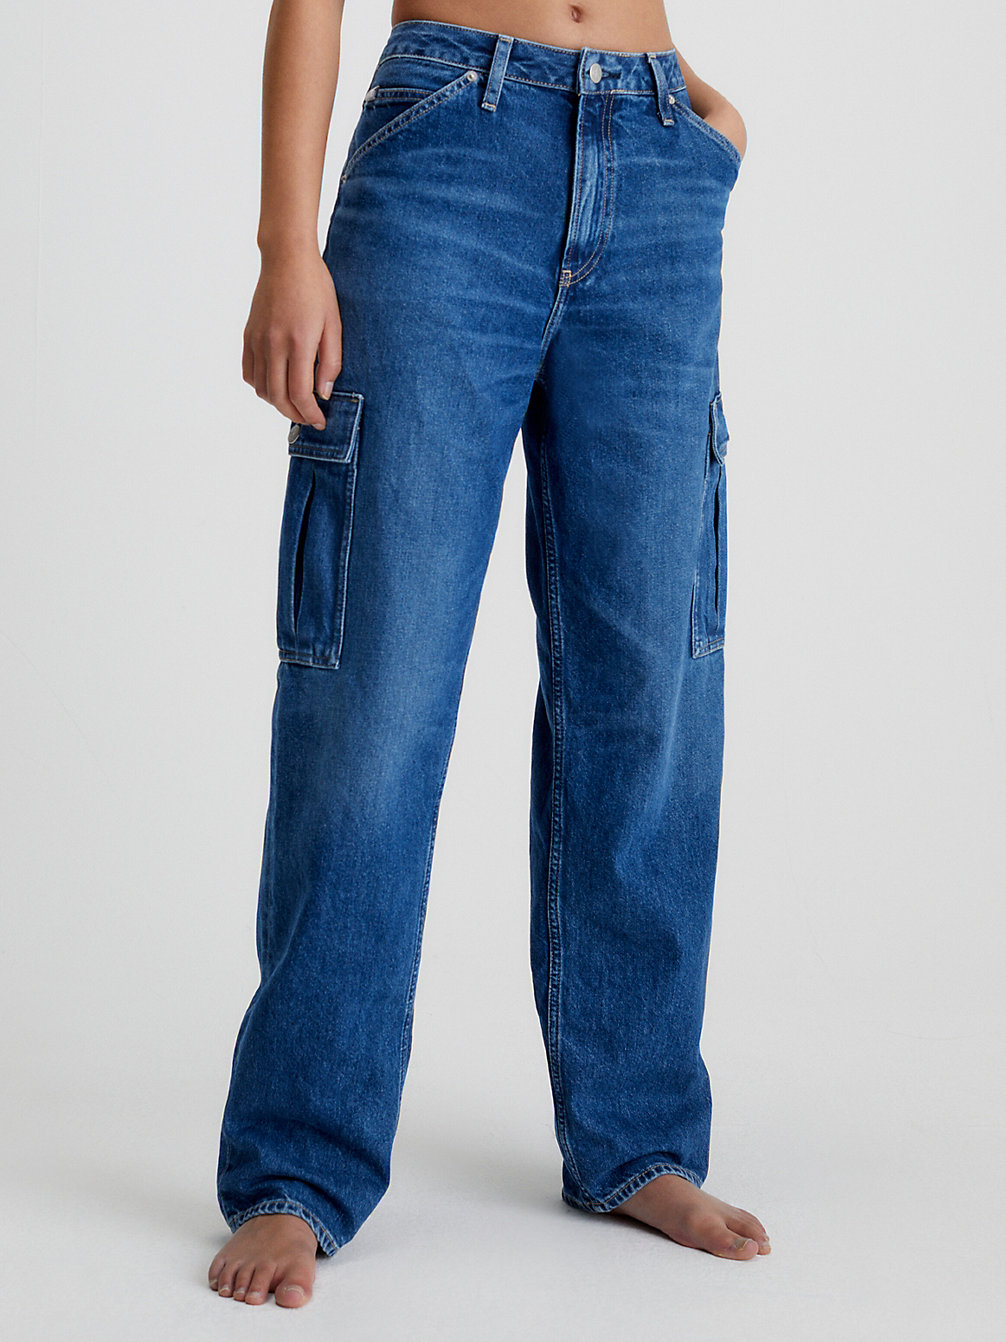 Jeans Rectos Cargo Estilo Años 90 > DENIM MEDIUM > undefined mujer > Calvin Klein